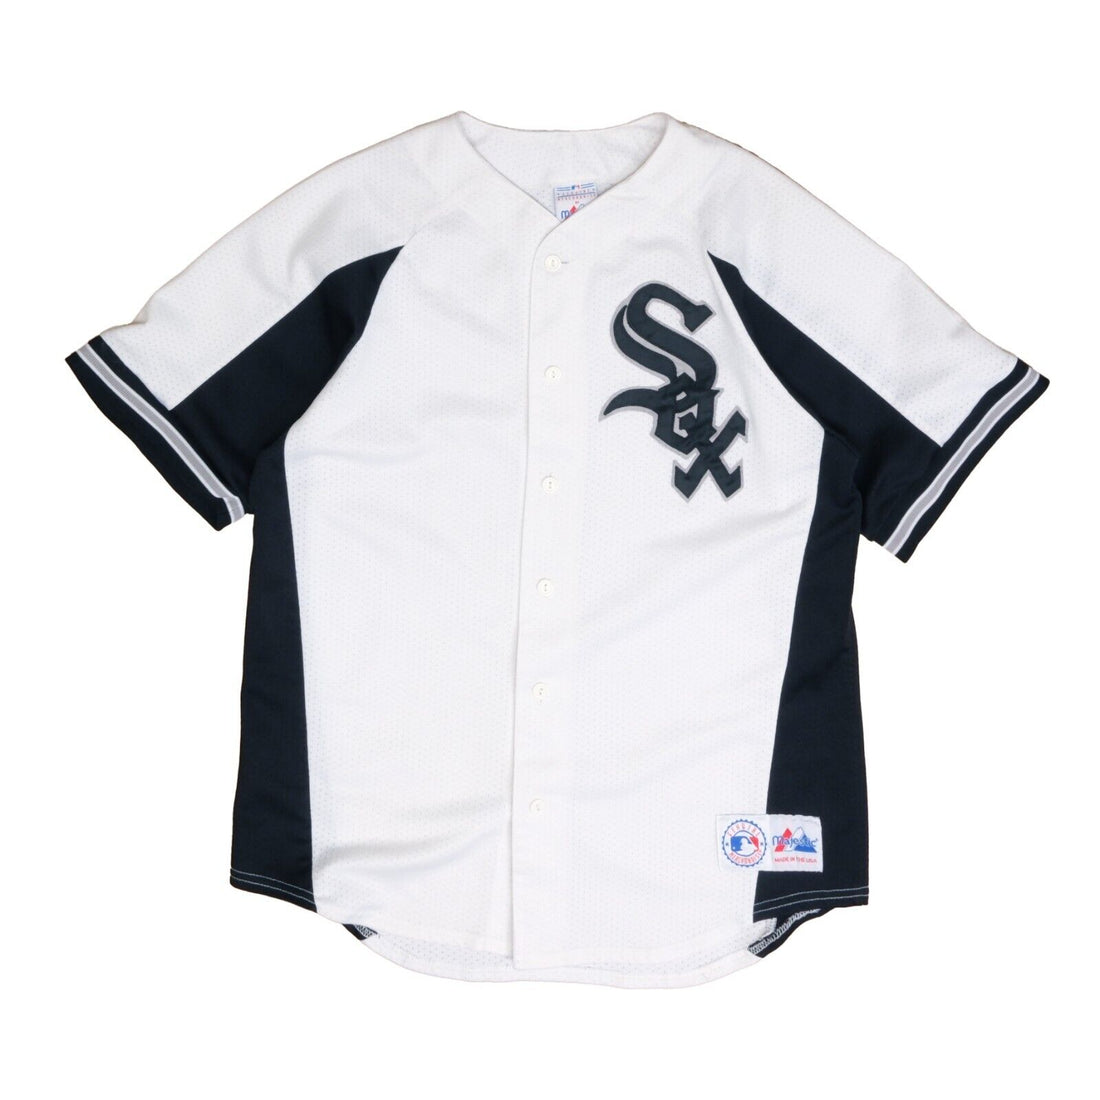 Vintage Chicago White Sox Majestic Baseball Jersey Size Large White MLB